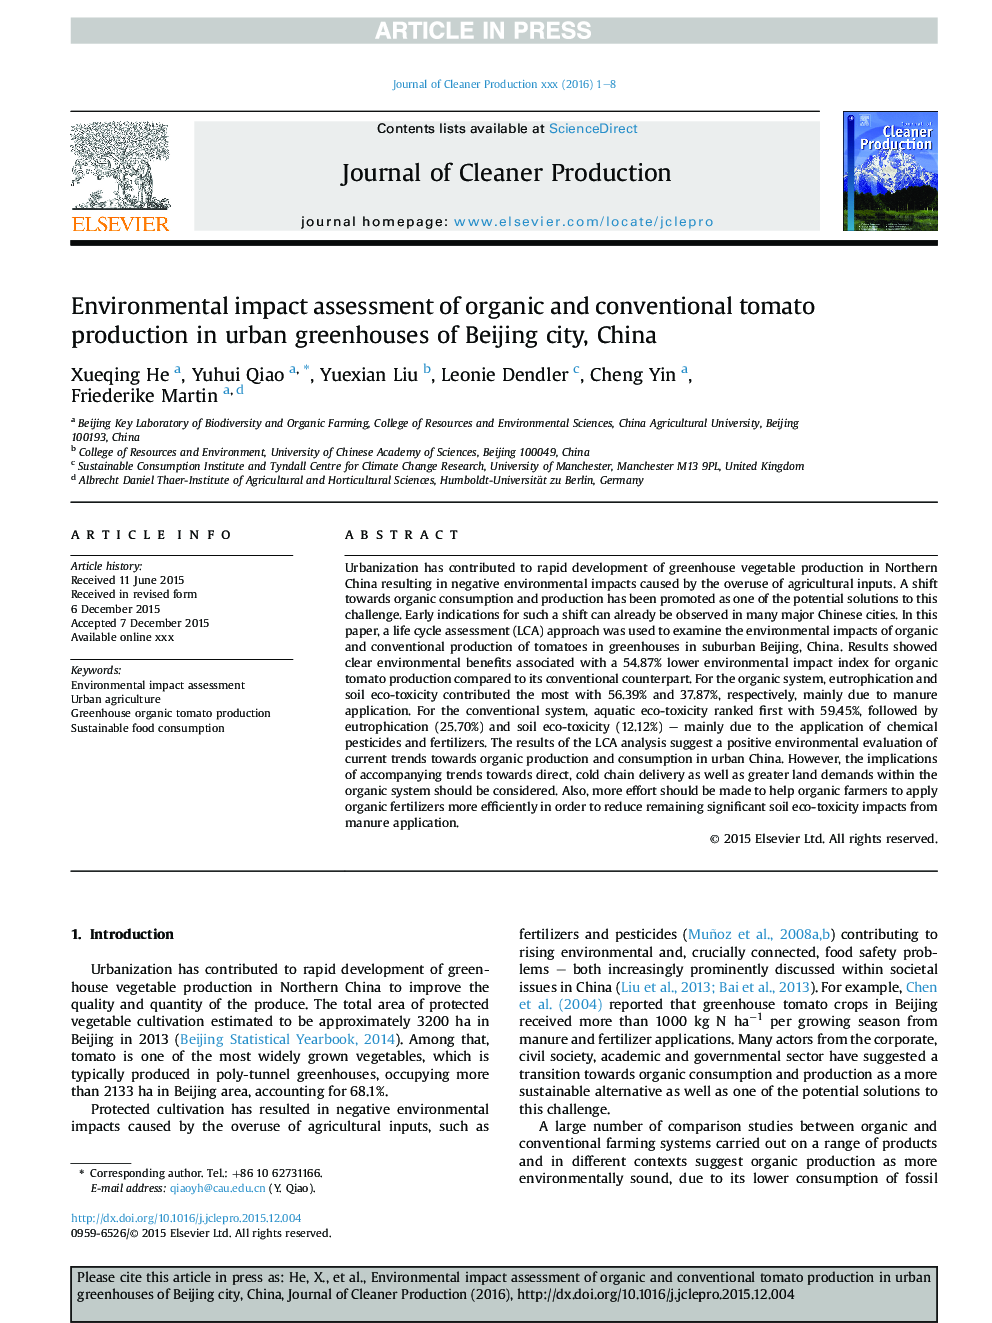 ارزیابی اثرات زیست محیطی تولید گوجه فرنگی آلی و معمولی در گلخانه های شهر پکن، چین 